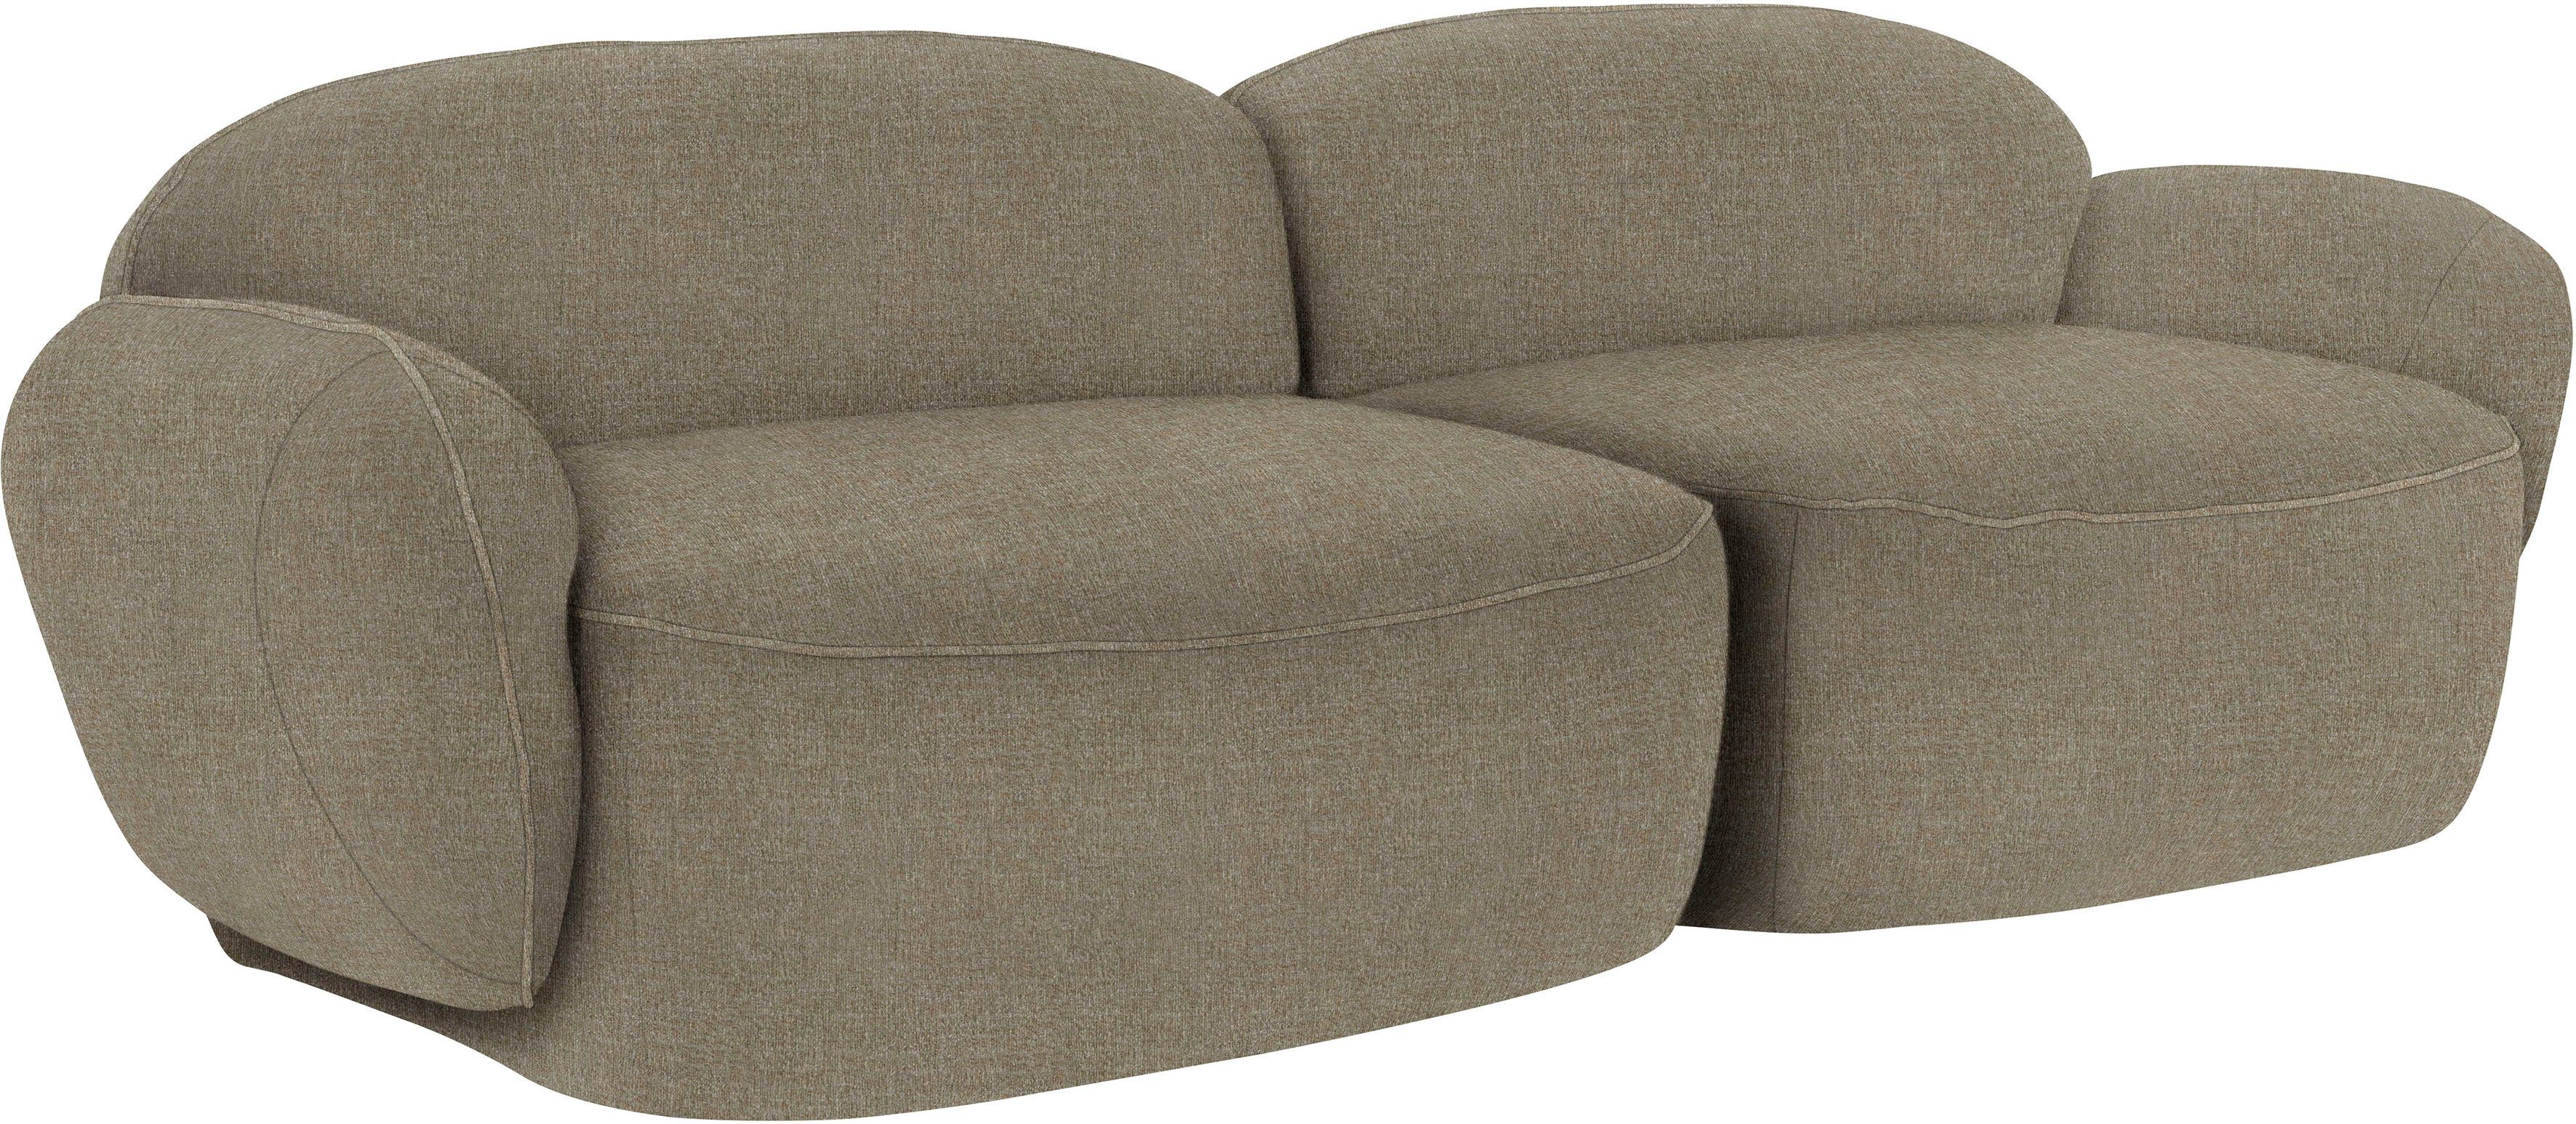 Memoryschaum, Bubble, komfortabel 2,5-Sitzer im furninova skandinavischen Design durch